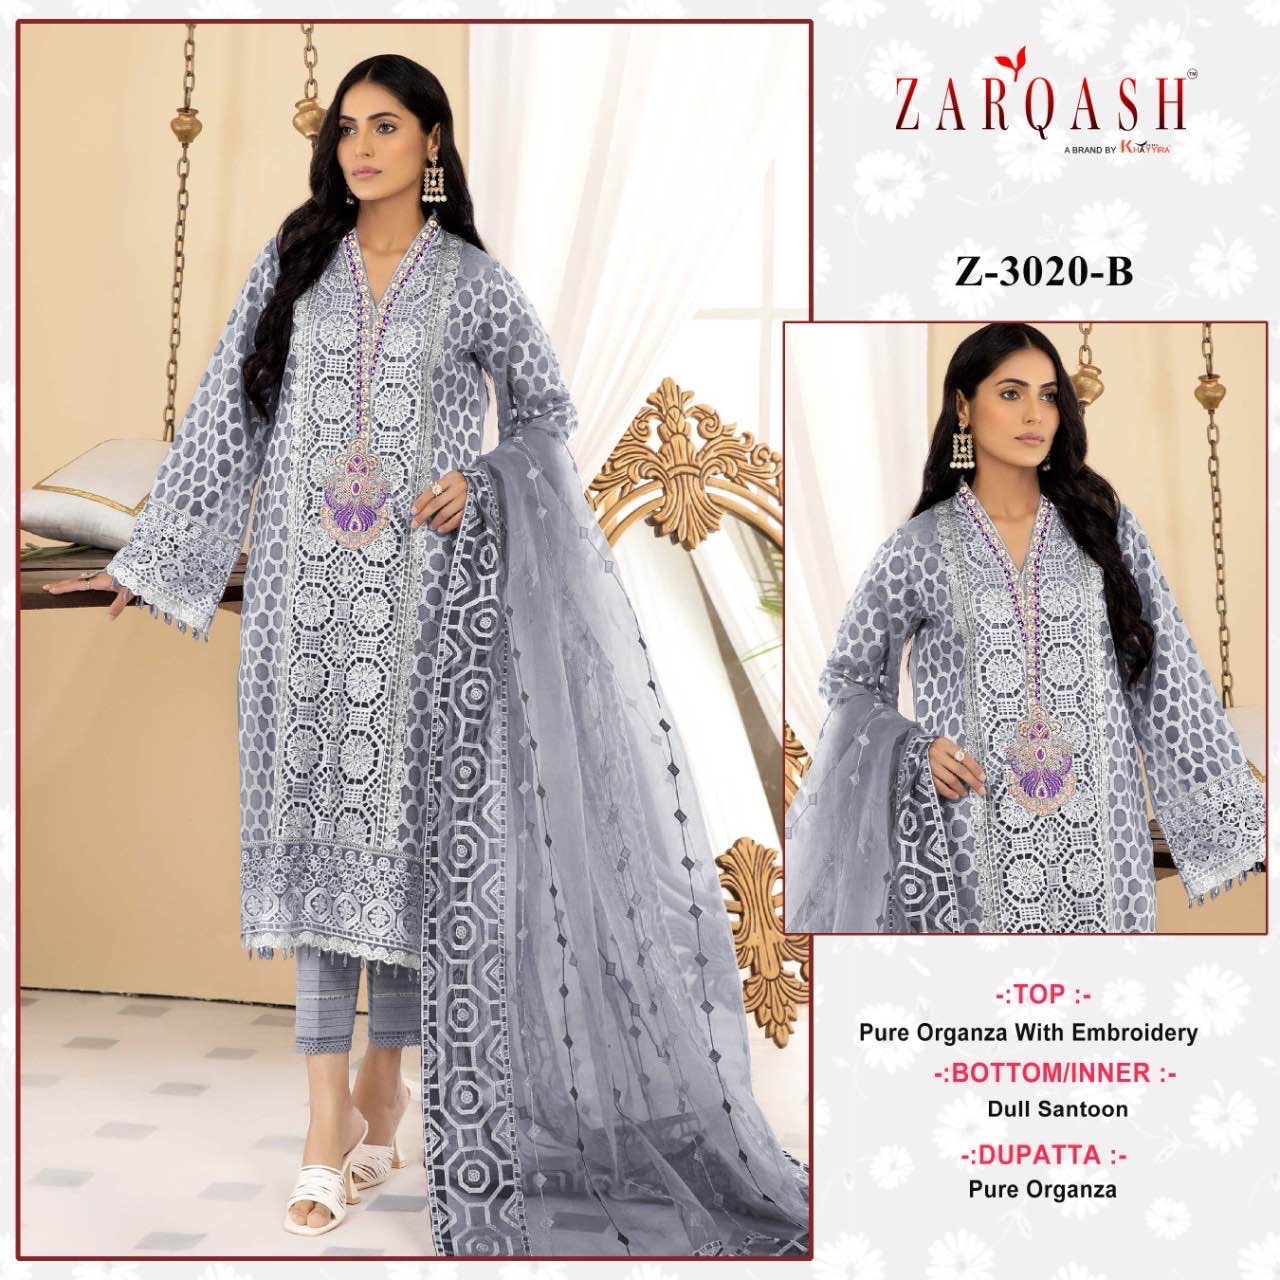 Zarqash Suits Z-3020-B